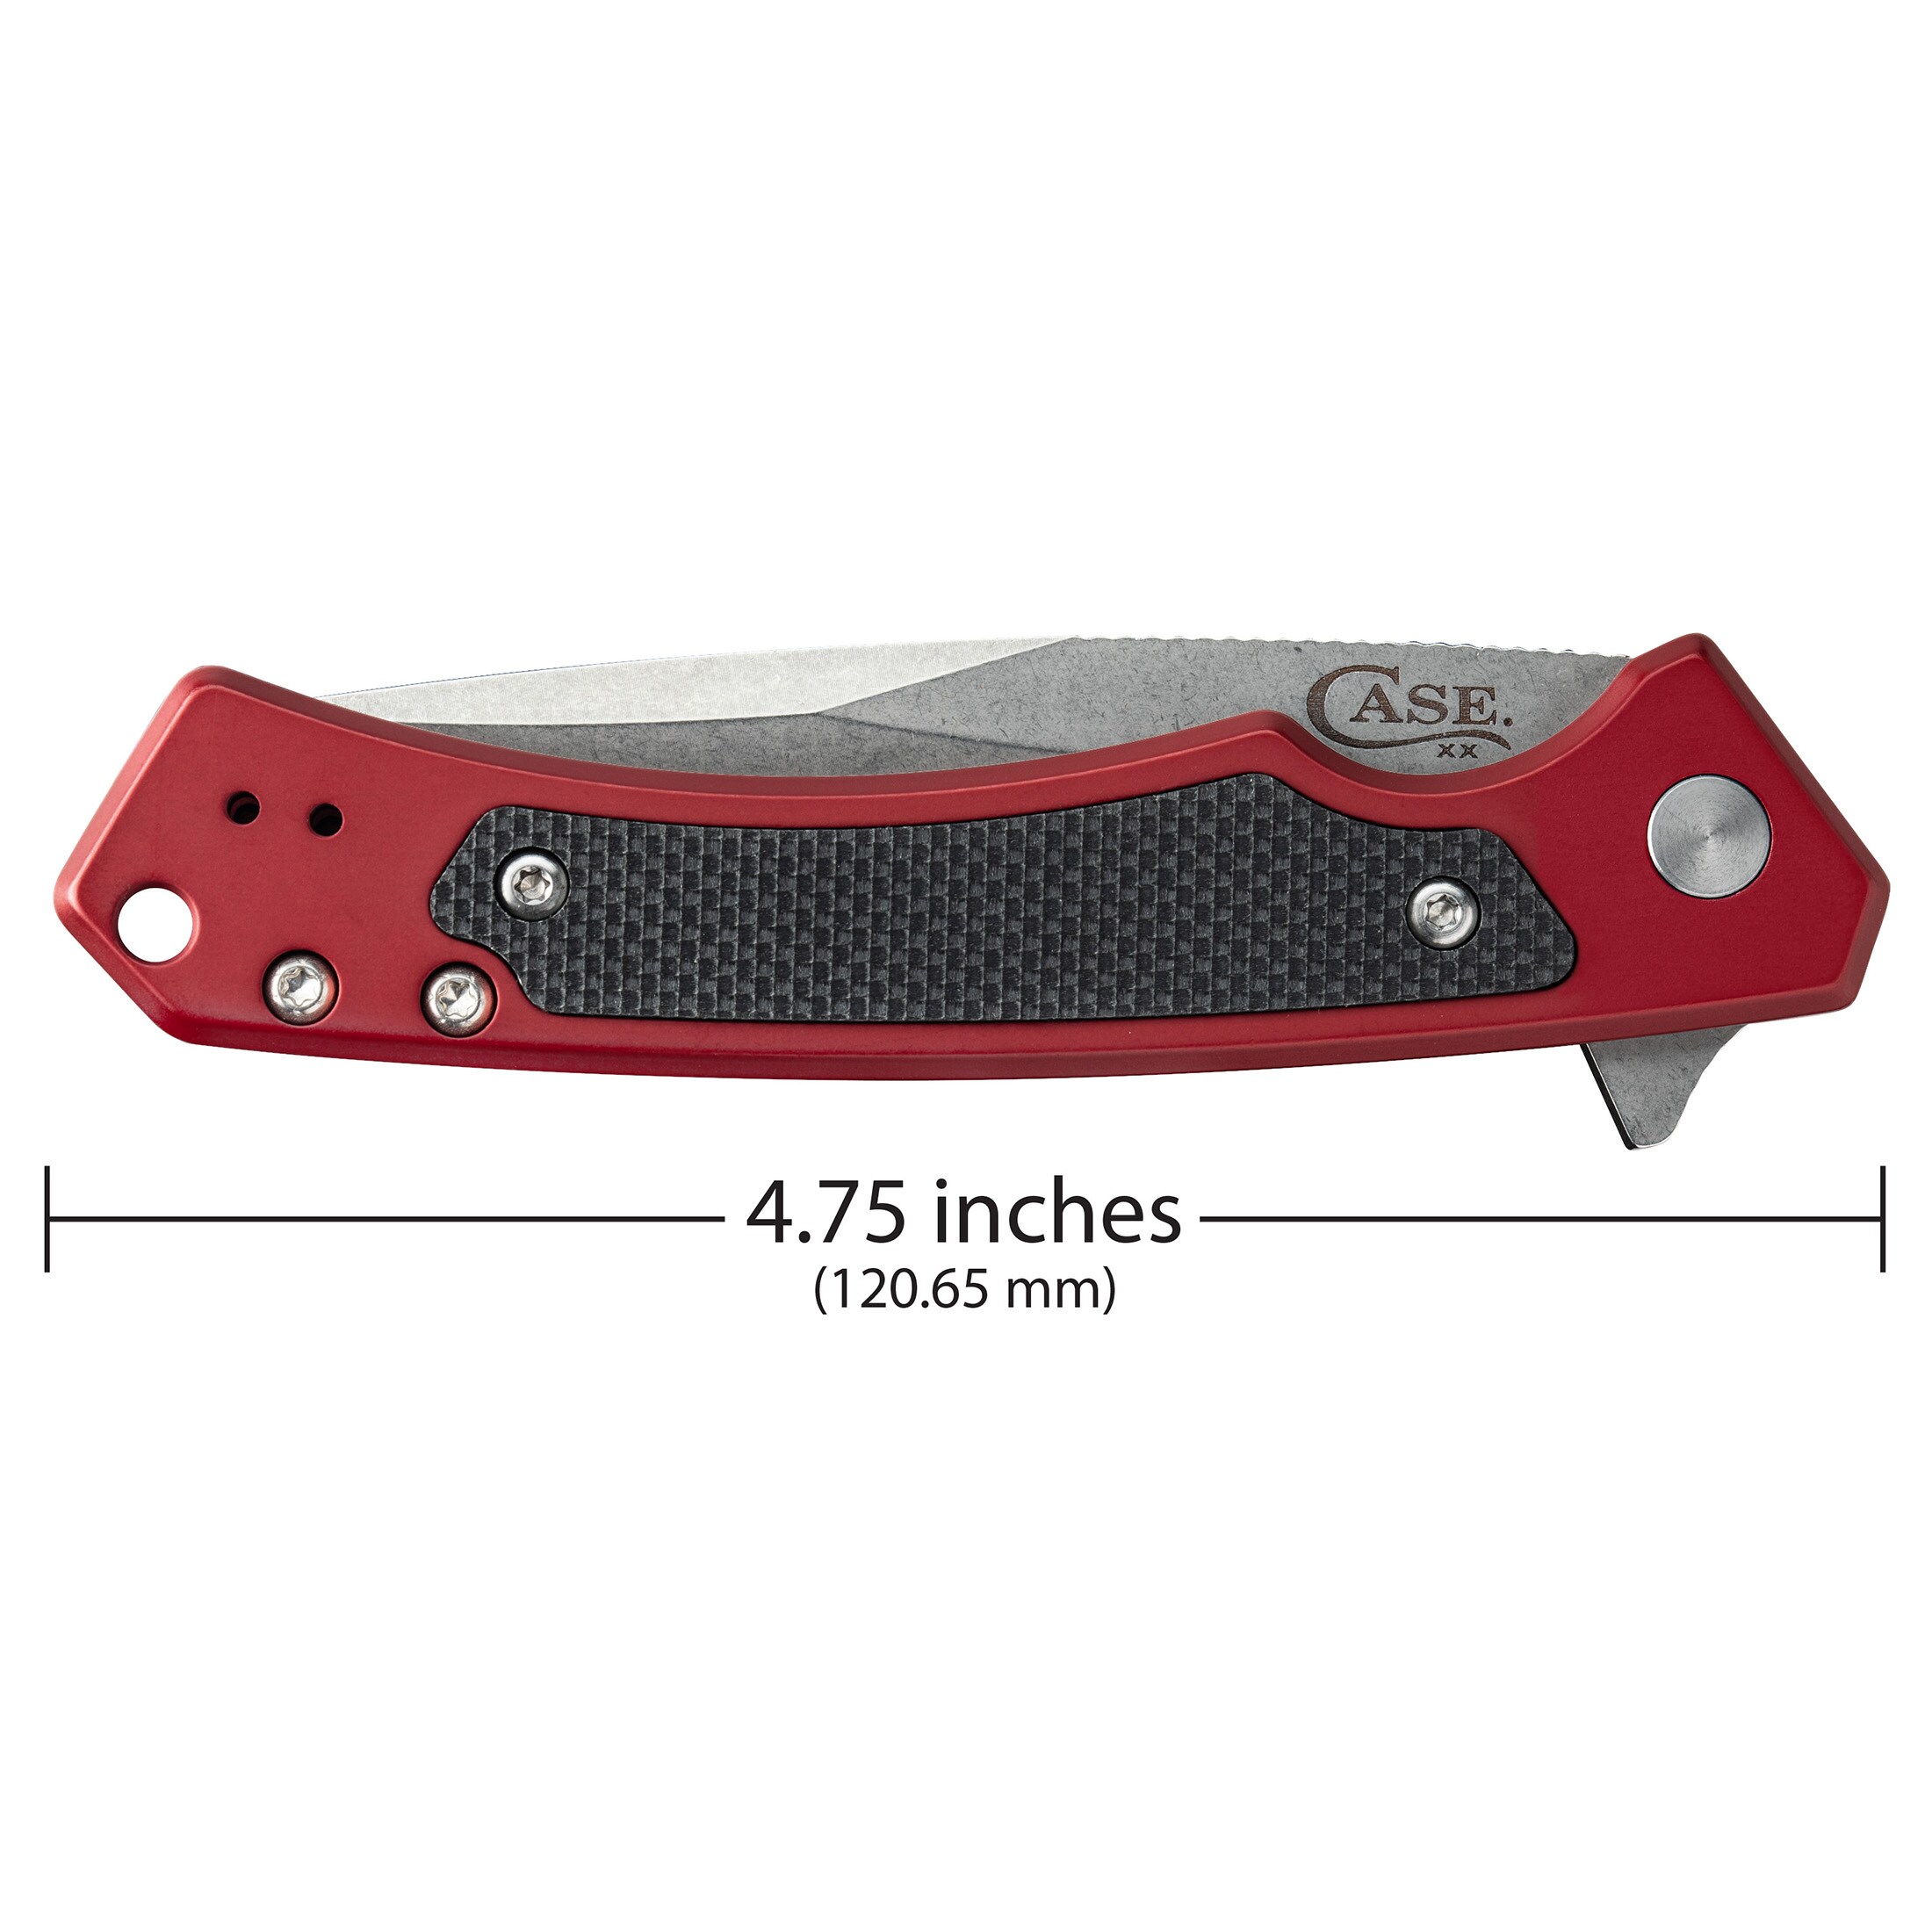 913925-1 General Precision Knife, 1/4 in Handle Diameter, Aluminum